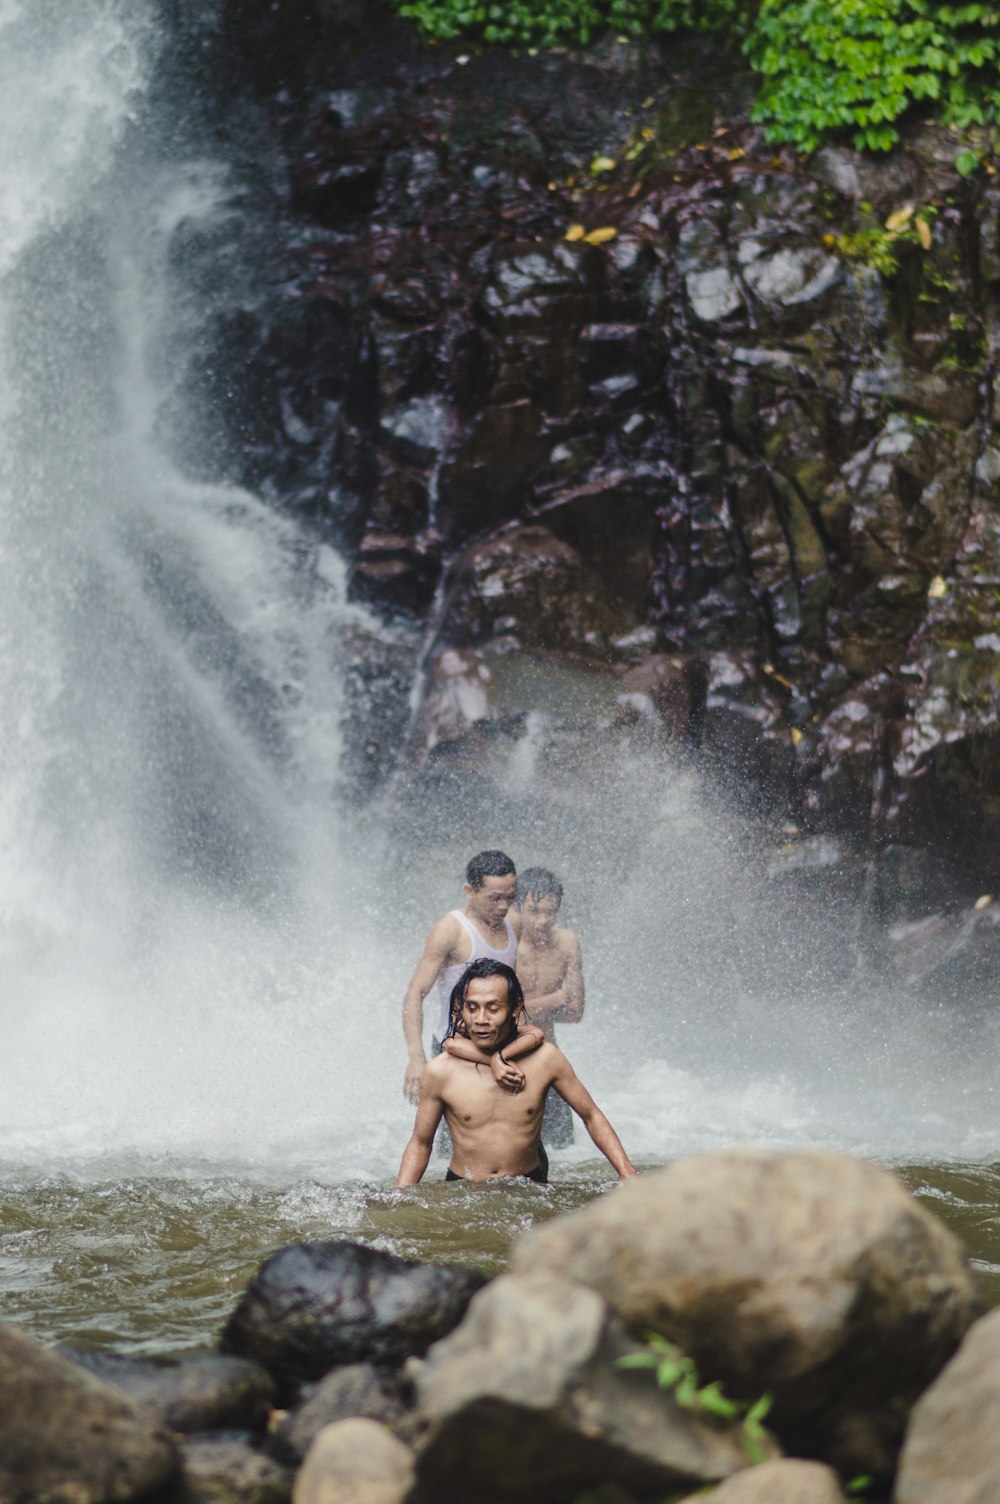 2 women sitting on rock in water